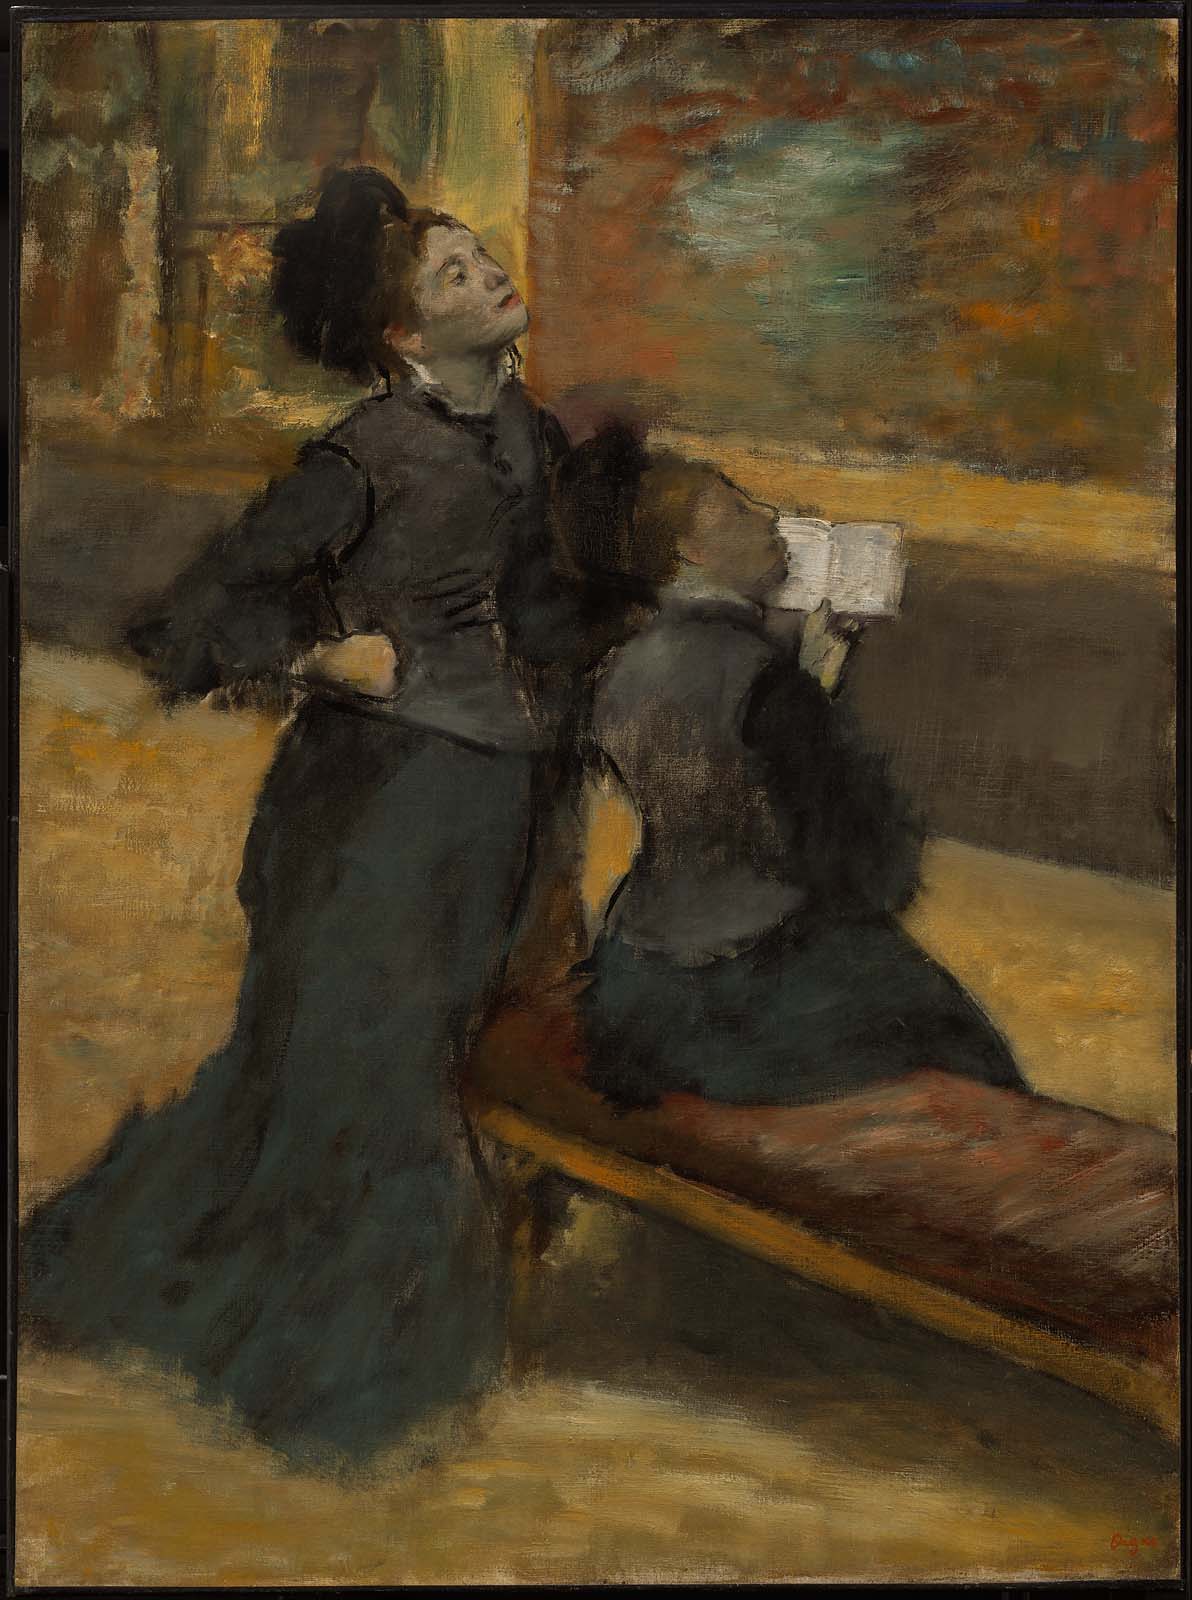 Visita a um museu by Edgar Degas - about 1879 - 1890 